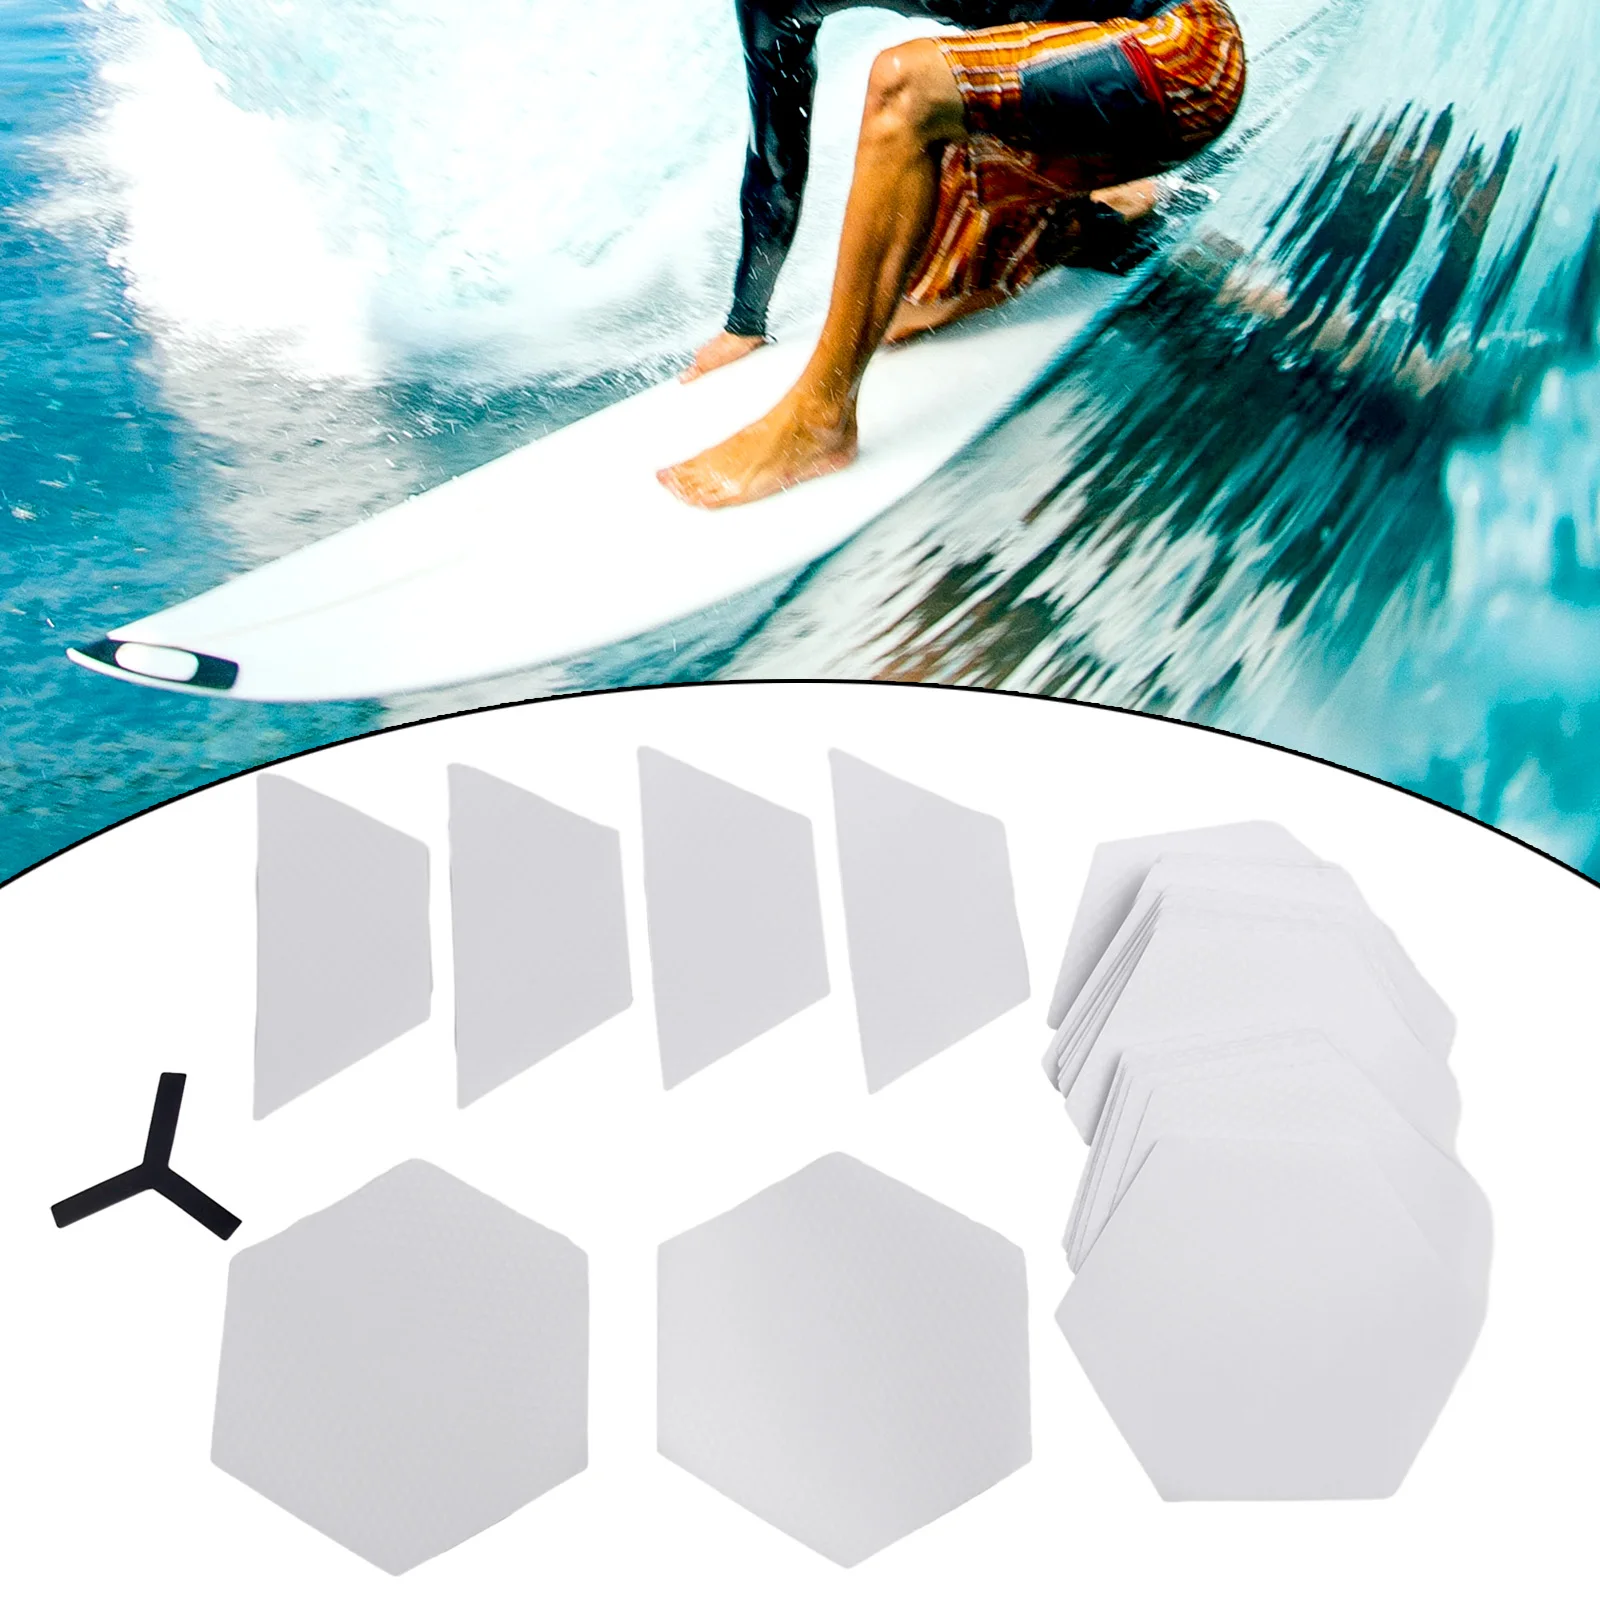 22шт Прозрачная накладка для доски для серфинга 16x14 см, нескользящие наклейки Без остатков клея для досок для серфинга, весловых досок